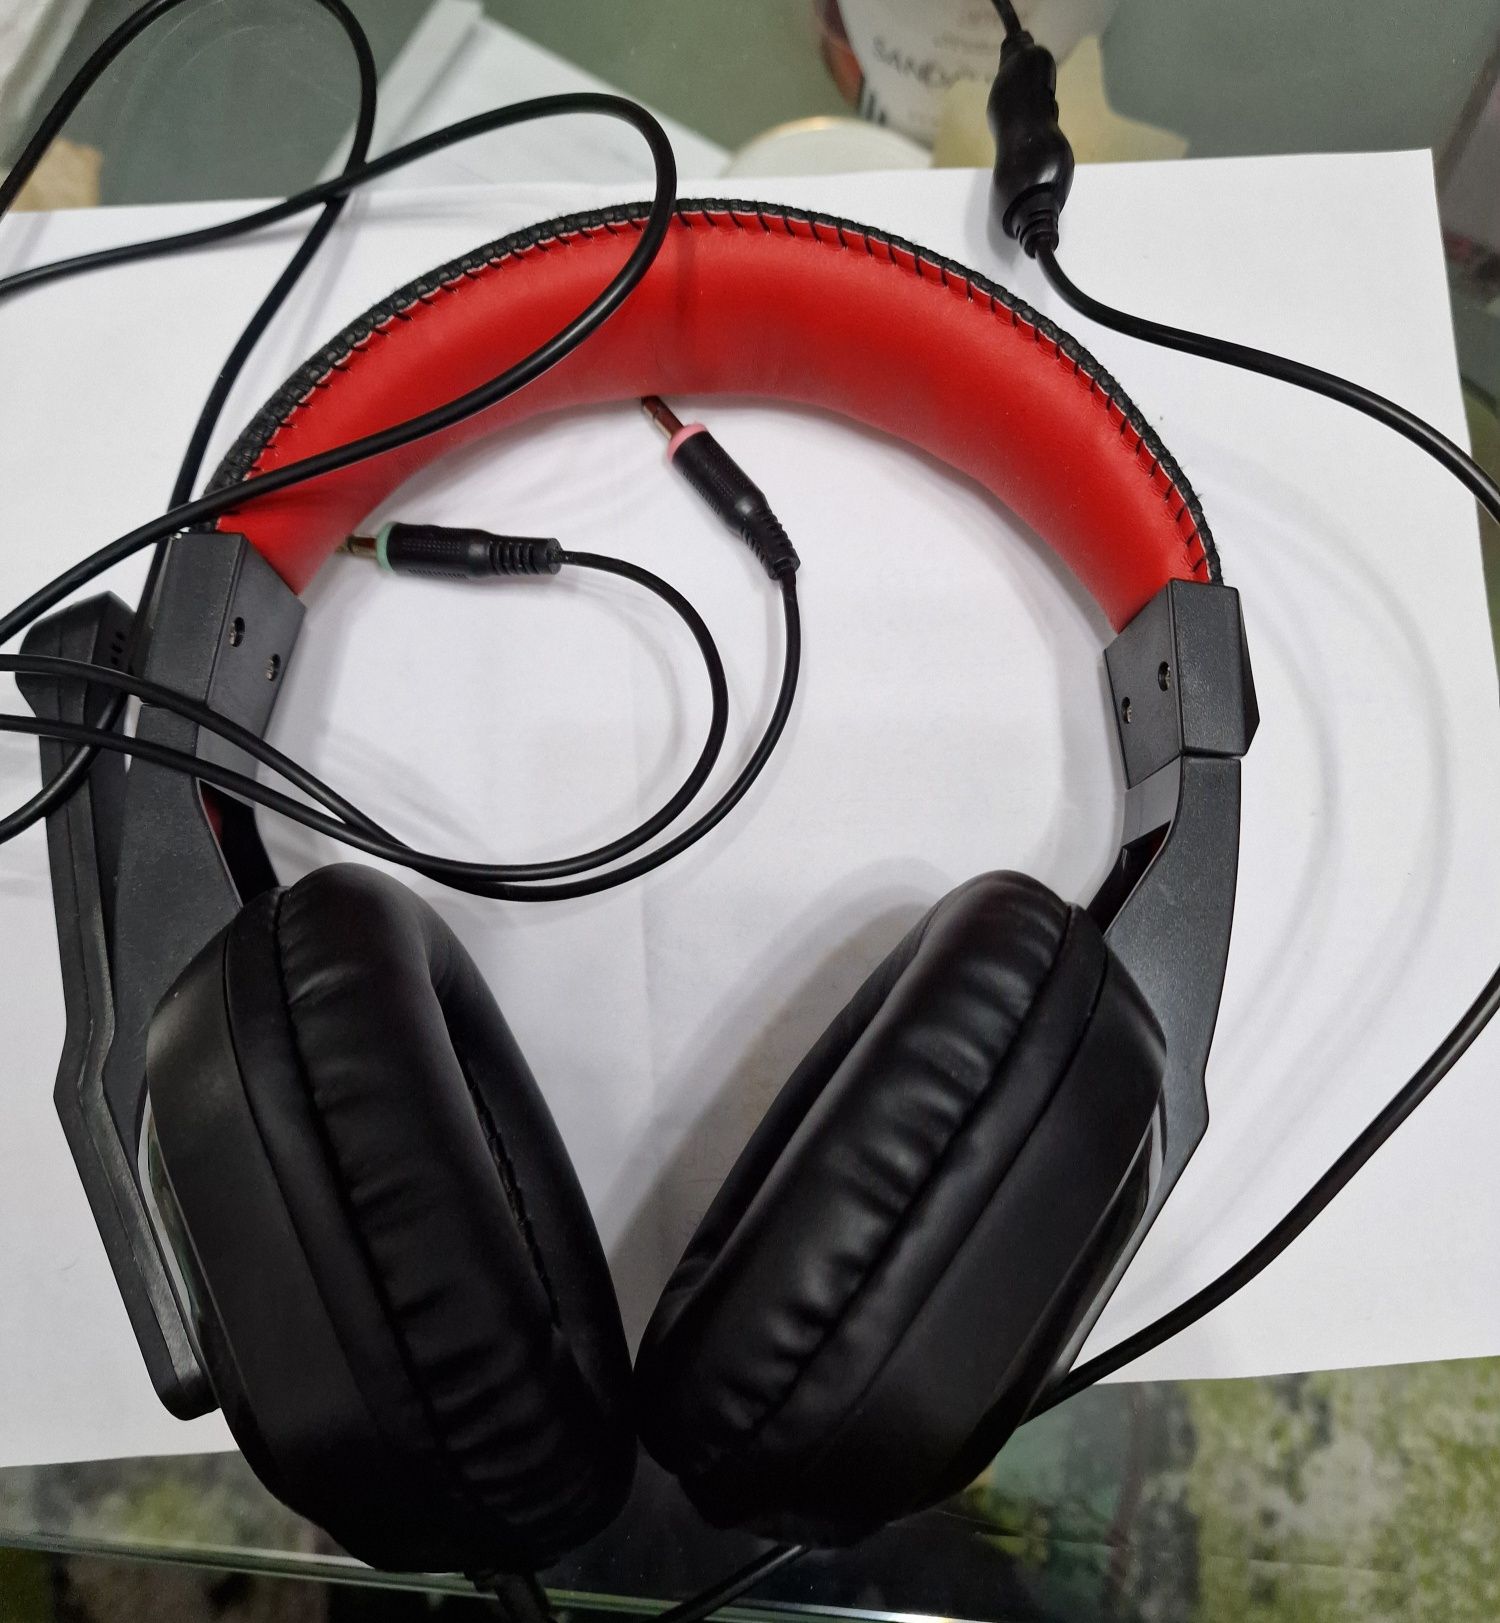 Геймърски слушалки Redragon за компютър или конзола